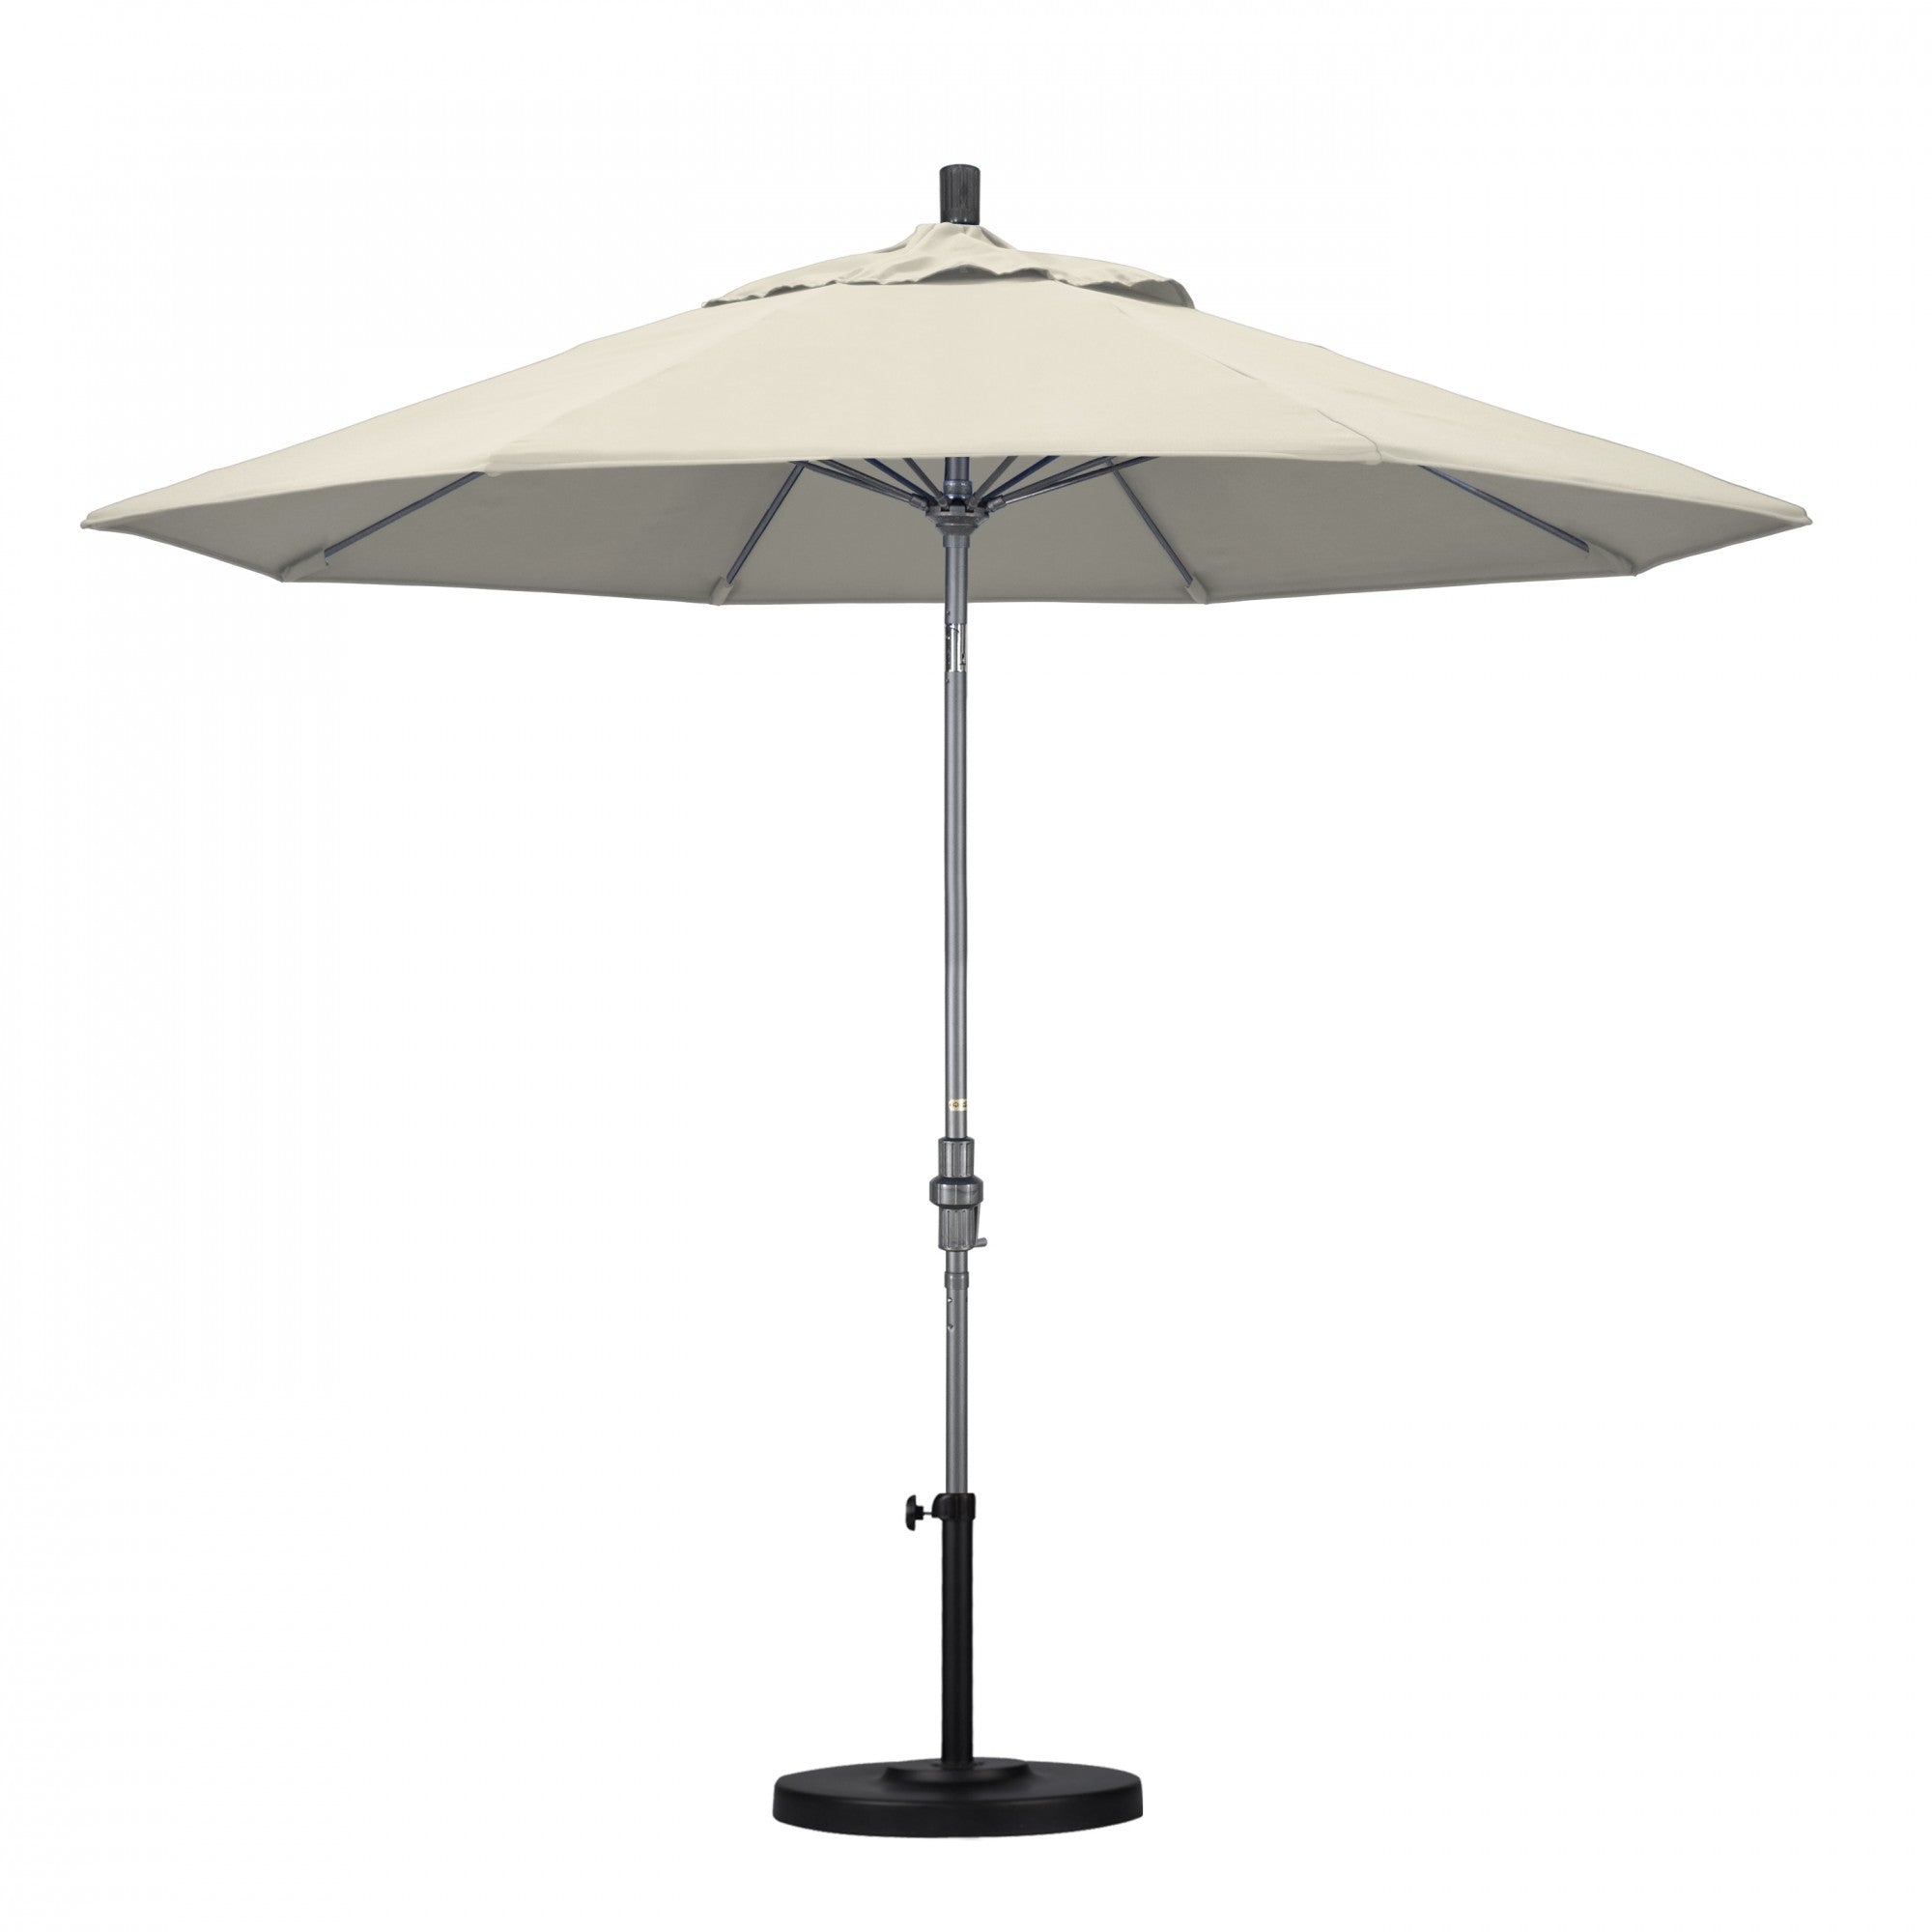 California Umbrella - 9' - Patio Umbrella Umbrella - Aluminum Pole - Beige - Olefin - GSCUF908010-F22